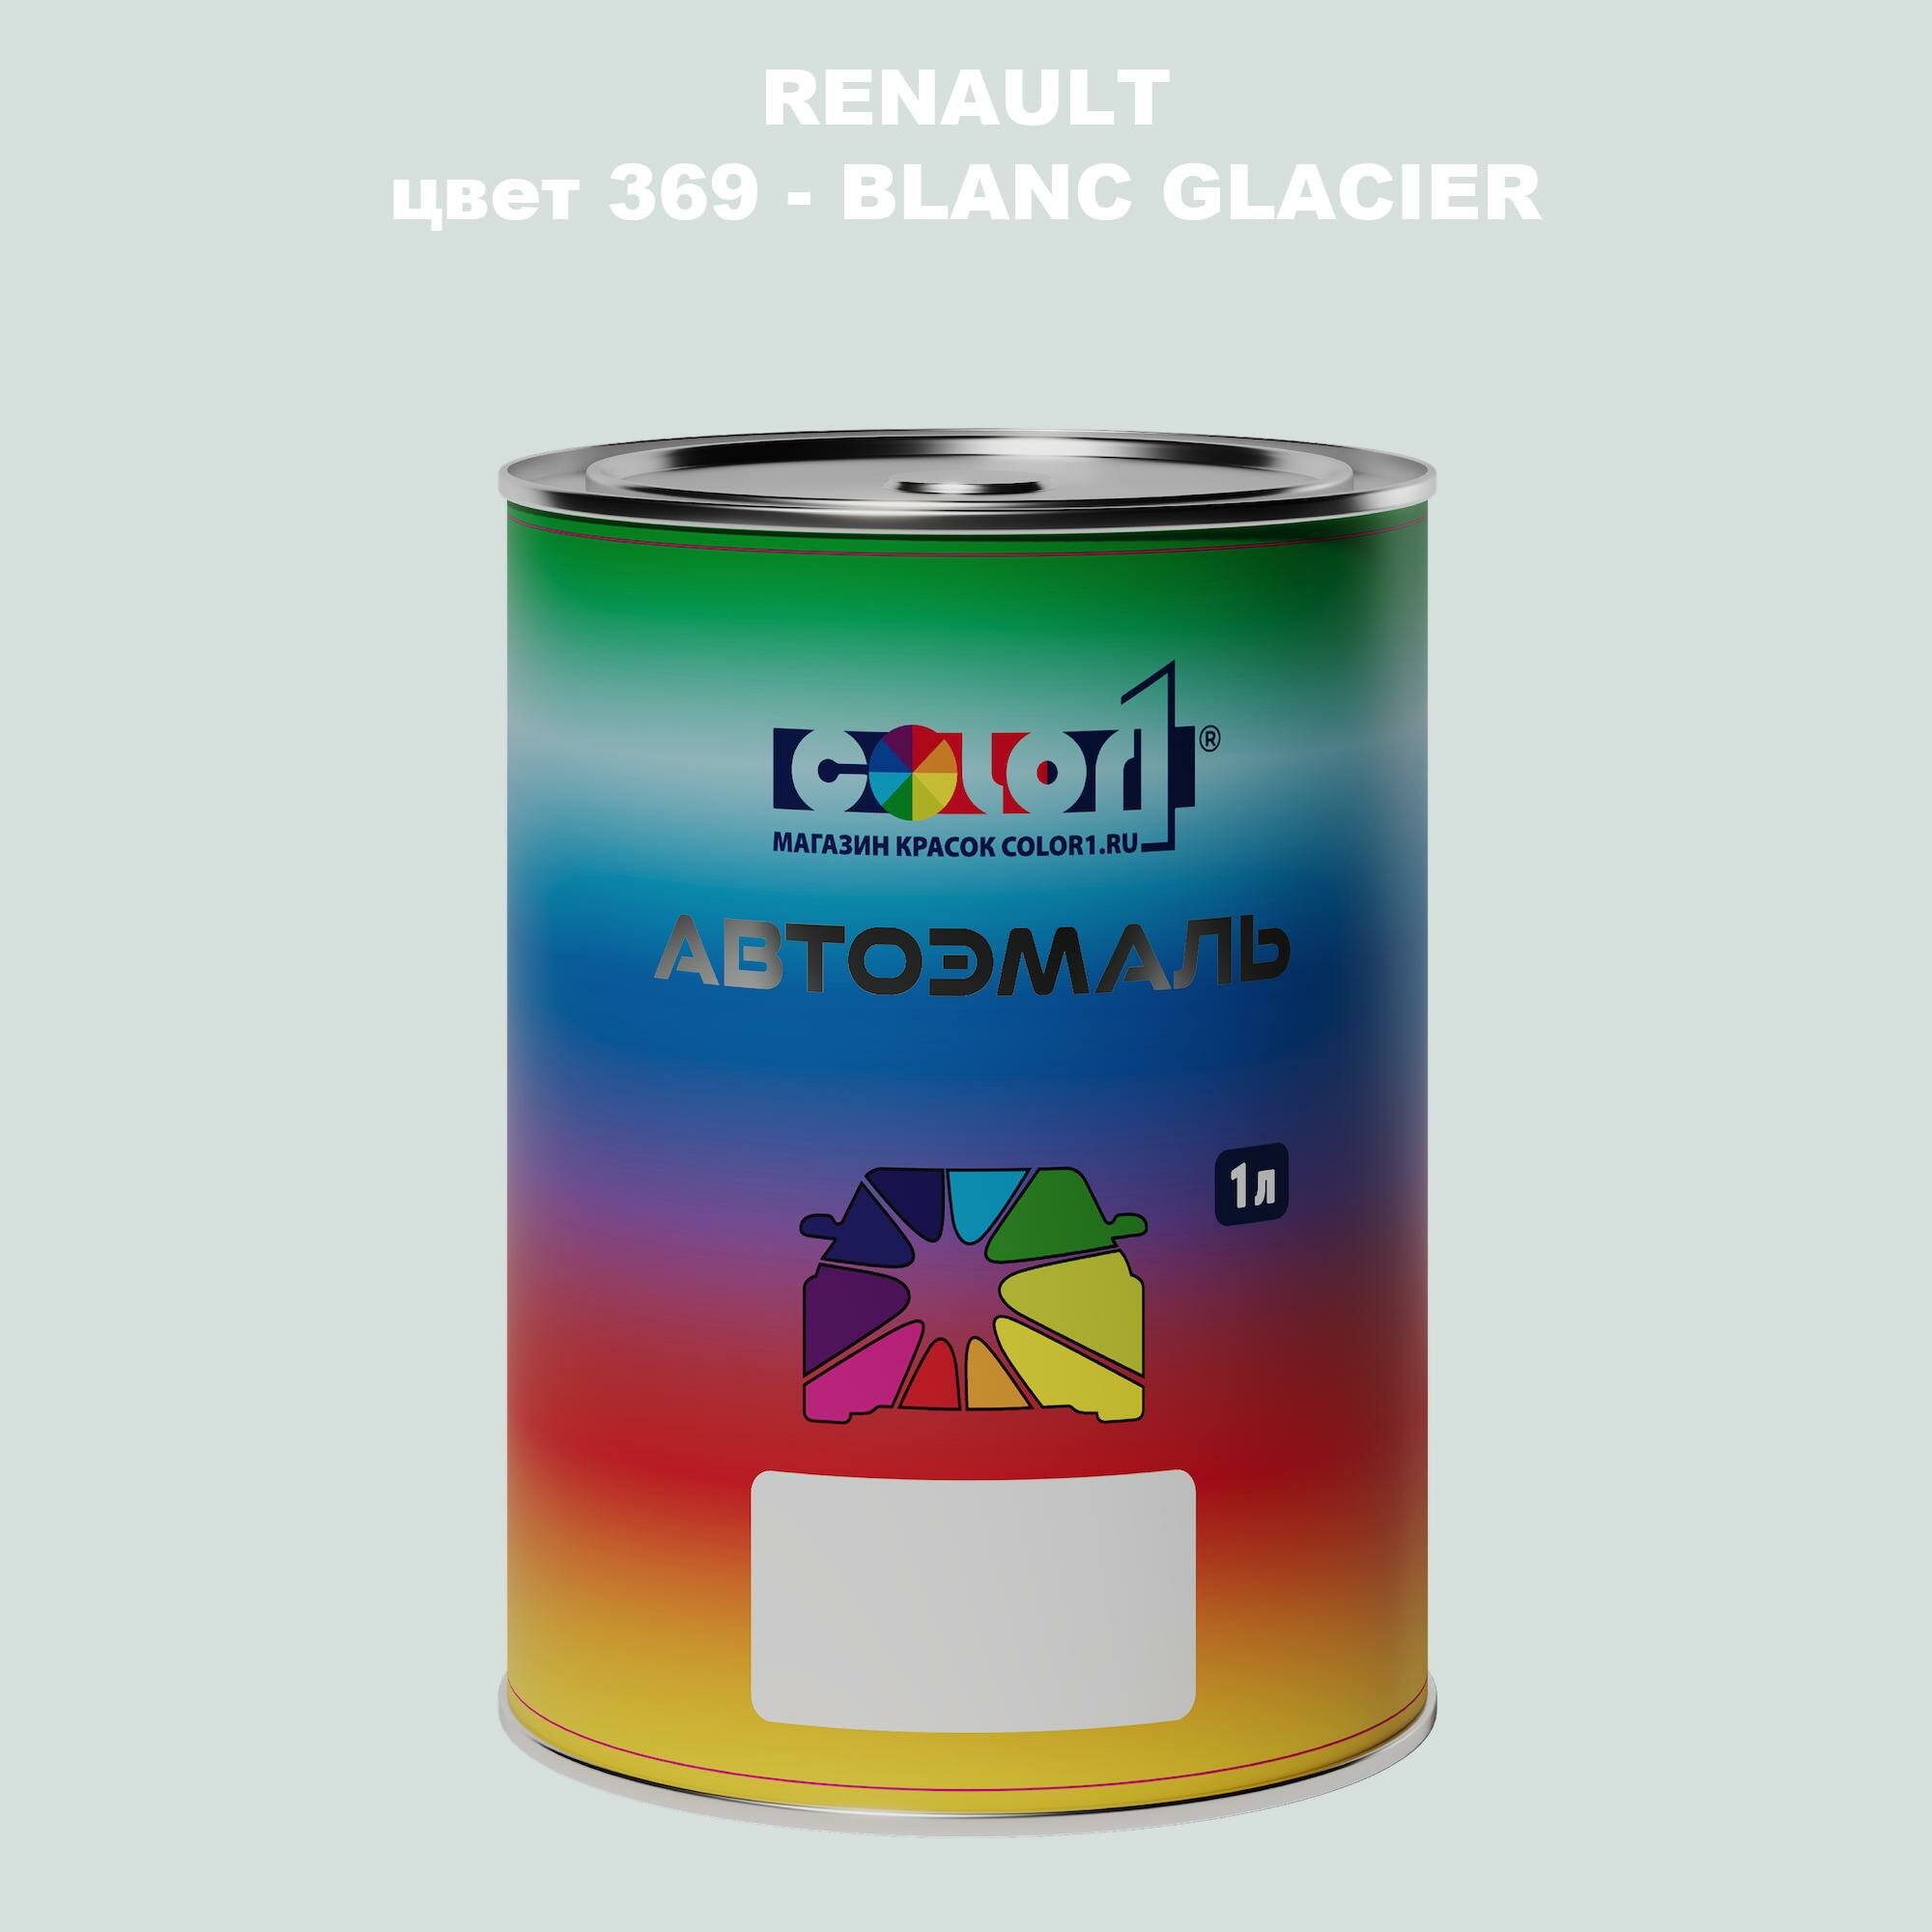 Автомобильная краска COLOR1 для RENAULT, цвет 369 - BLANC GLACIER